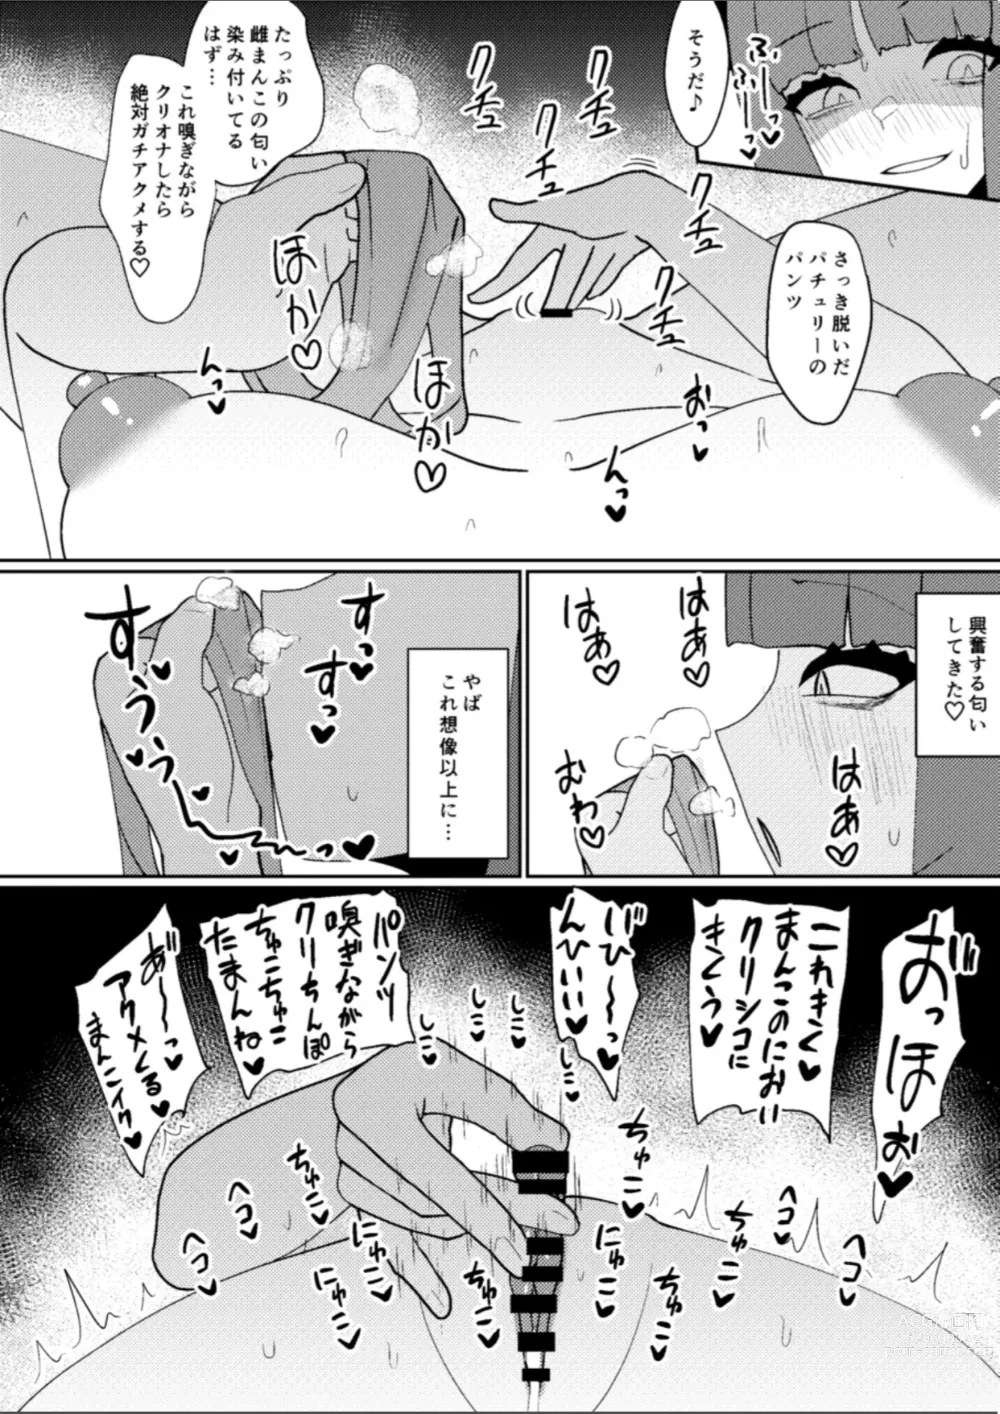 Page 9 of doujinshi Miyadeguchi Mizuchi no Hyoui Onanie Den